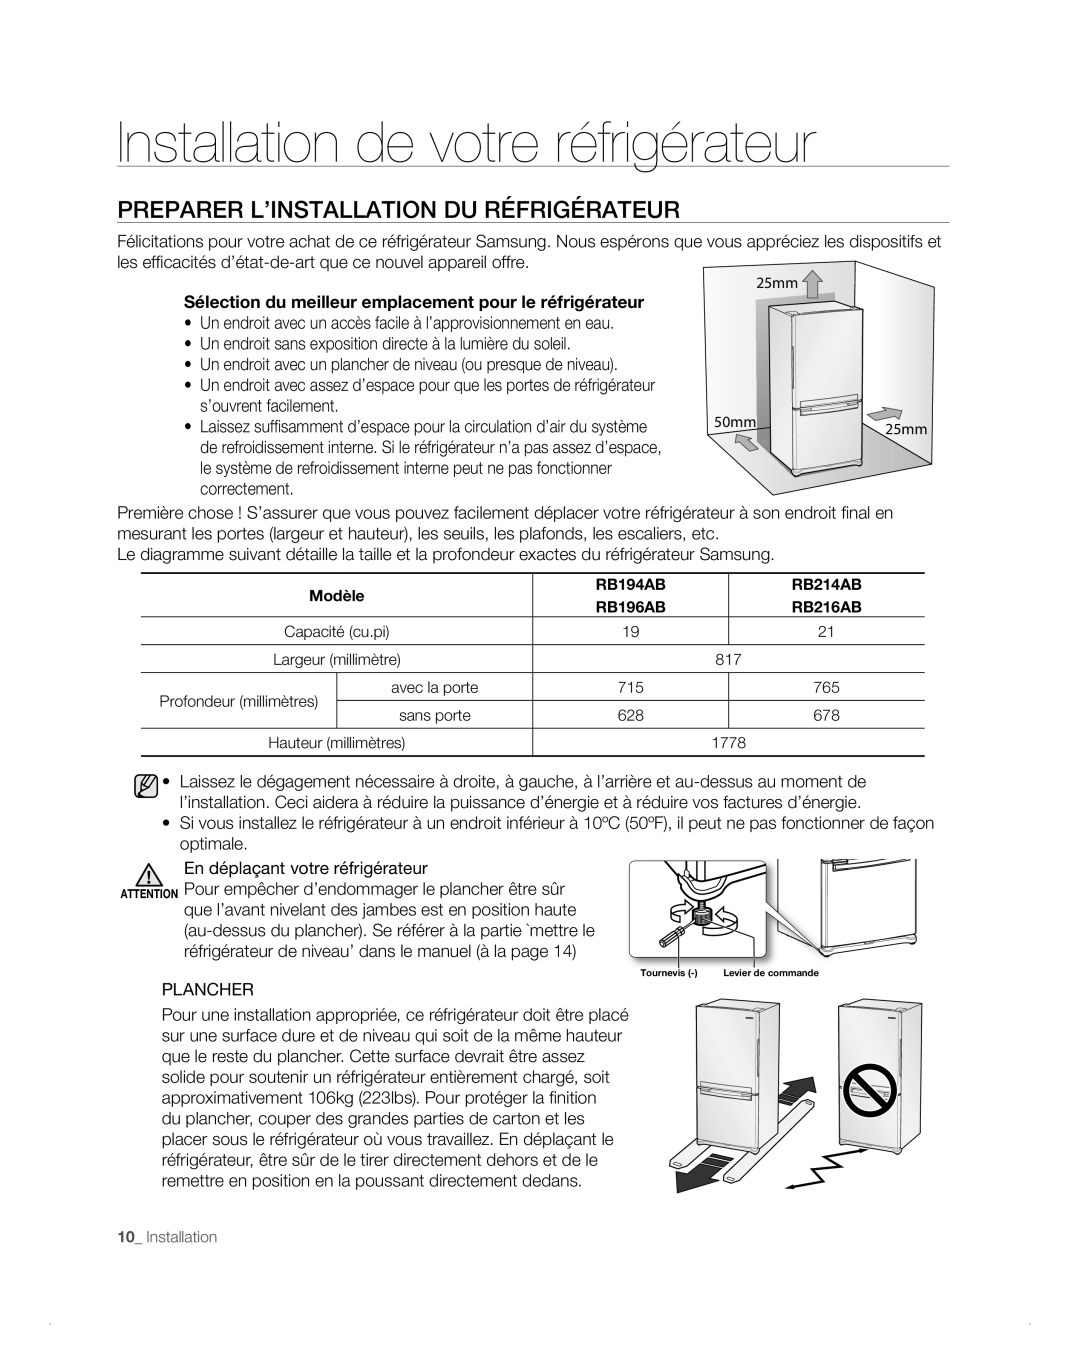 Samsung RB214AB, RB194AB, RB216AB, RB196AB Installation de votre réfrigérateur, Preparer L’Installation Du Réfrigérateur 